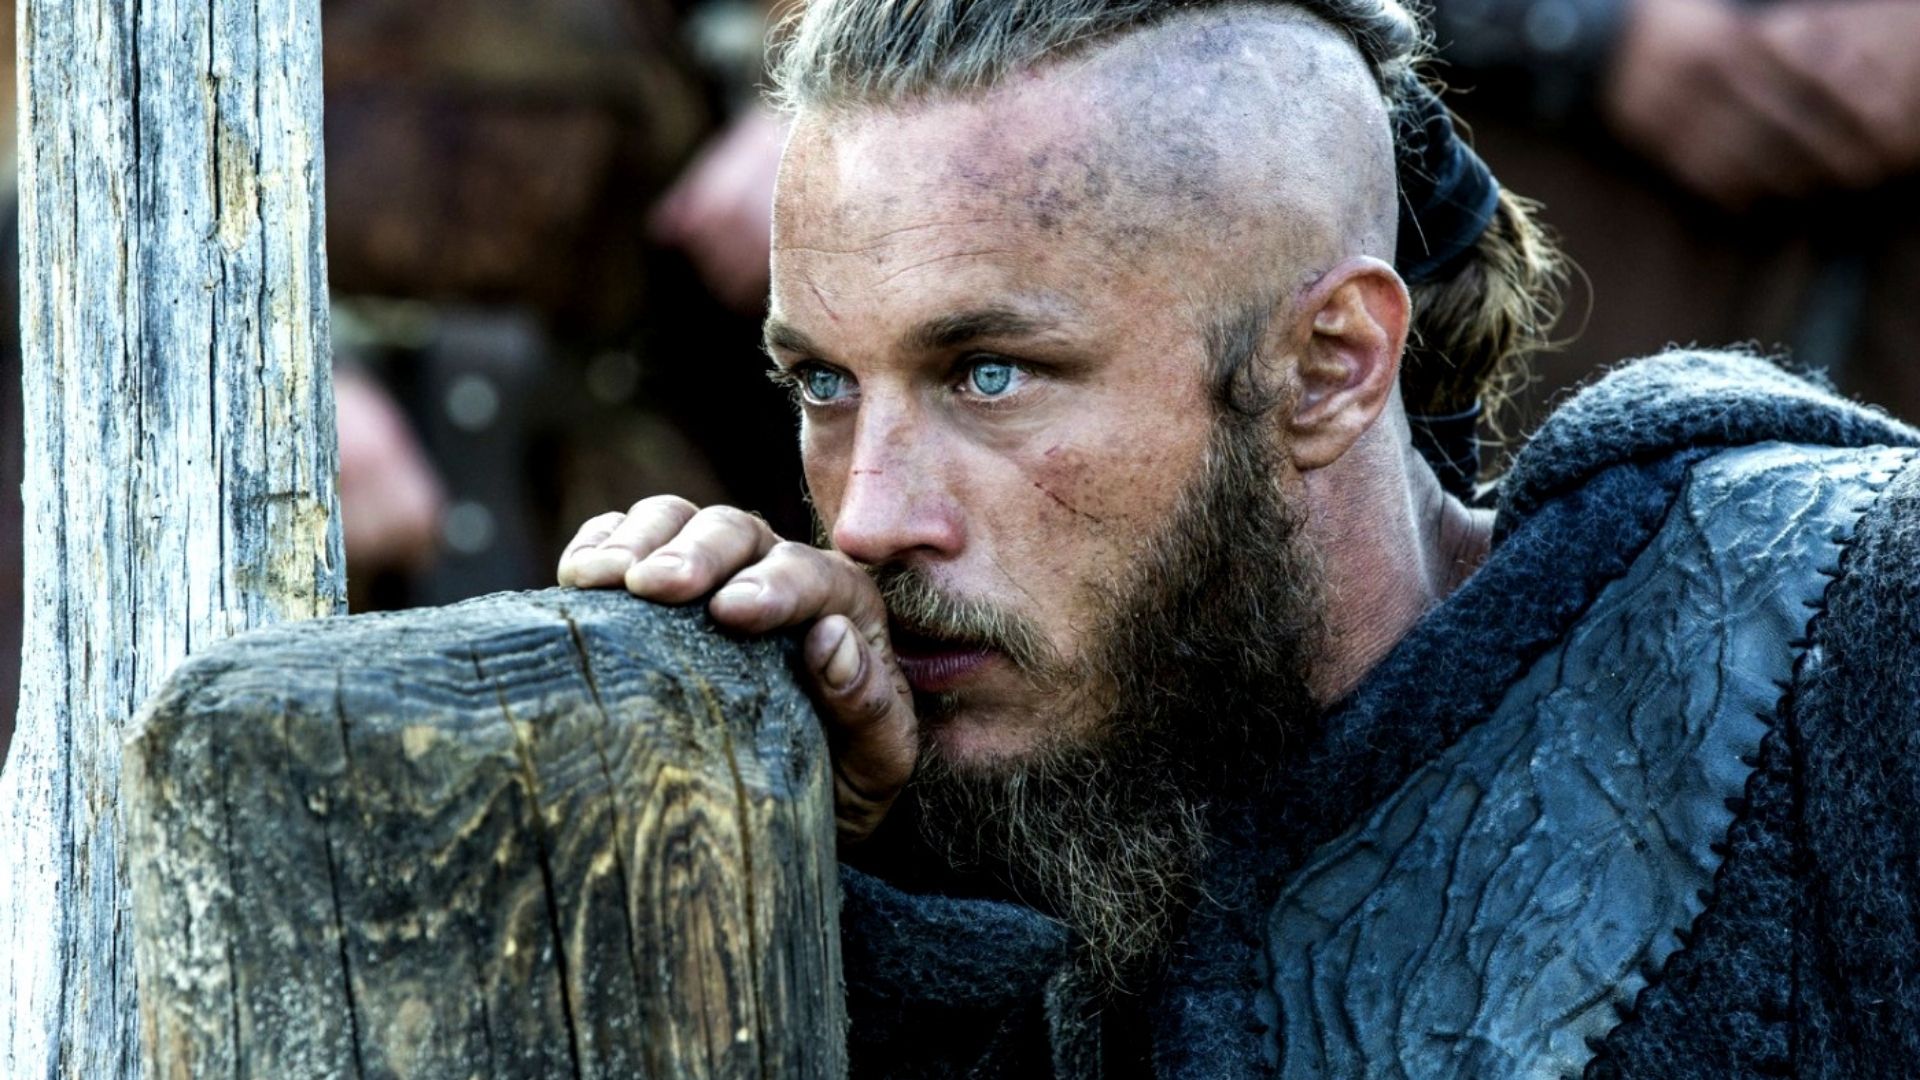 Criador explica por que optou por TERMINAR a série 'Vikings' - CinePOP